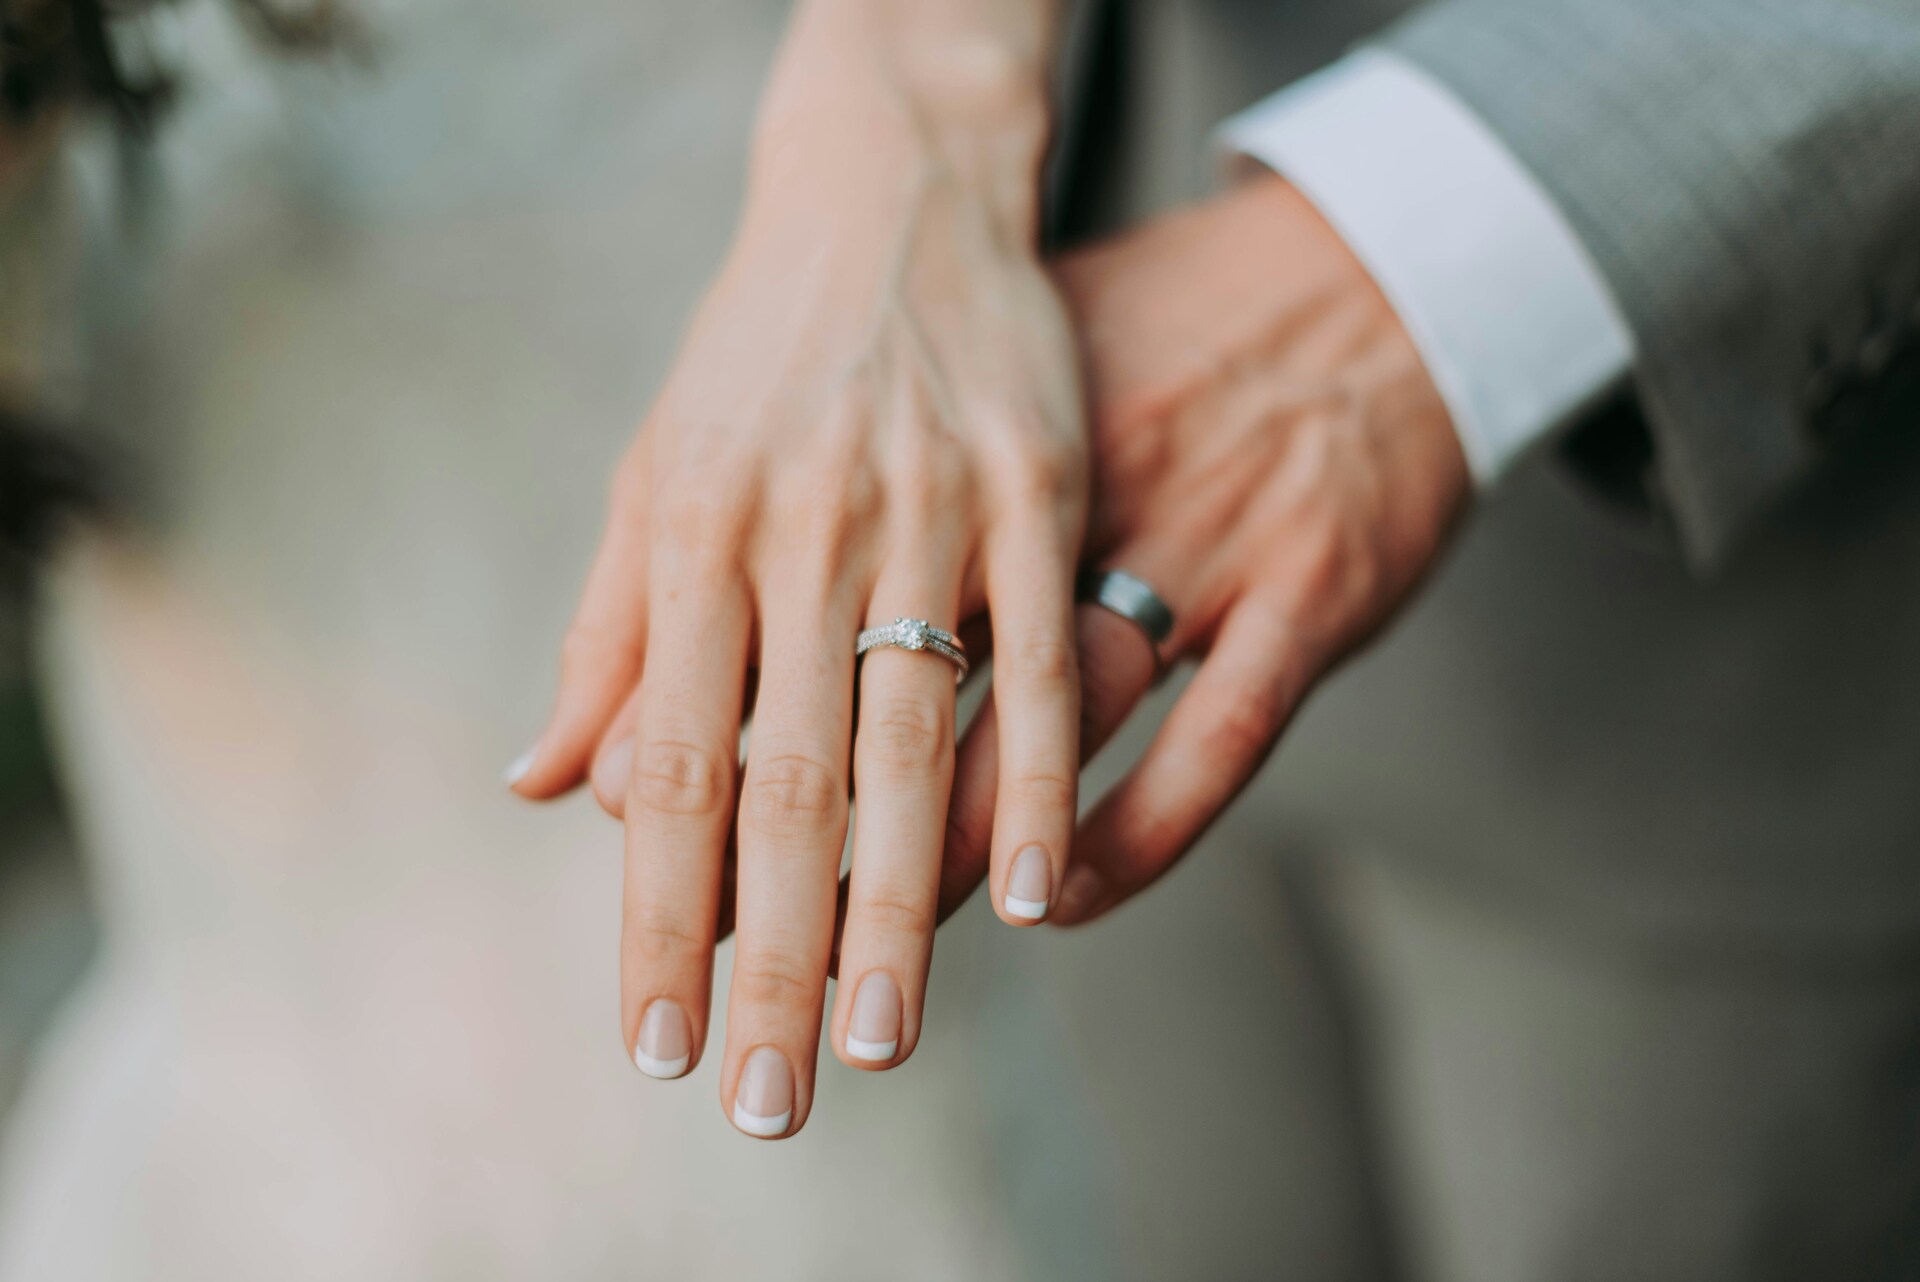 Психолог Уоррен: до свадьбы стоит спросить мнение партнёра об изменах